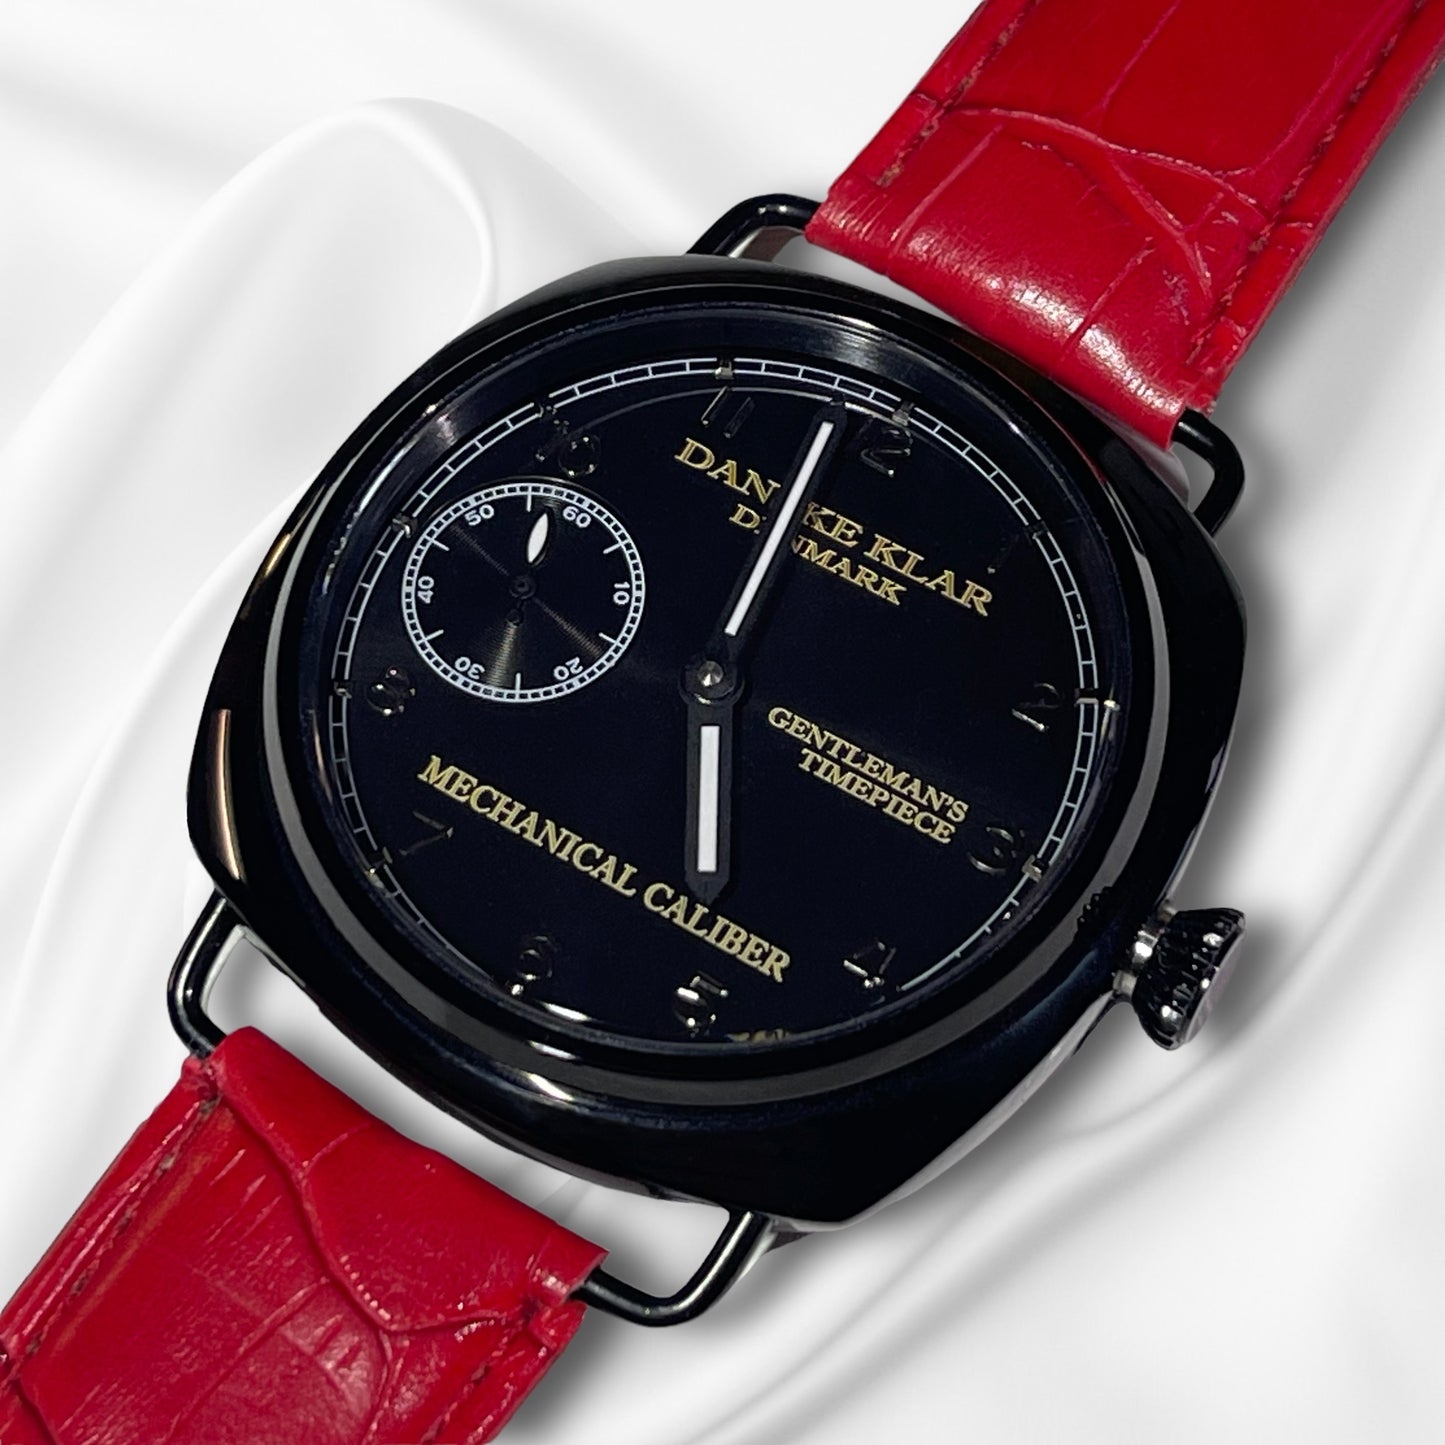 The Gentleman’s Timepiece